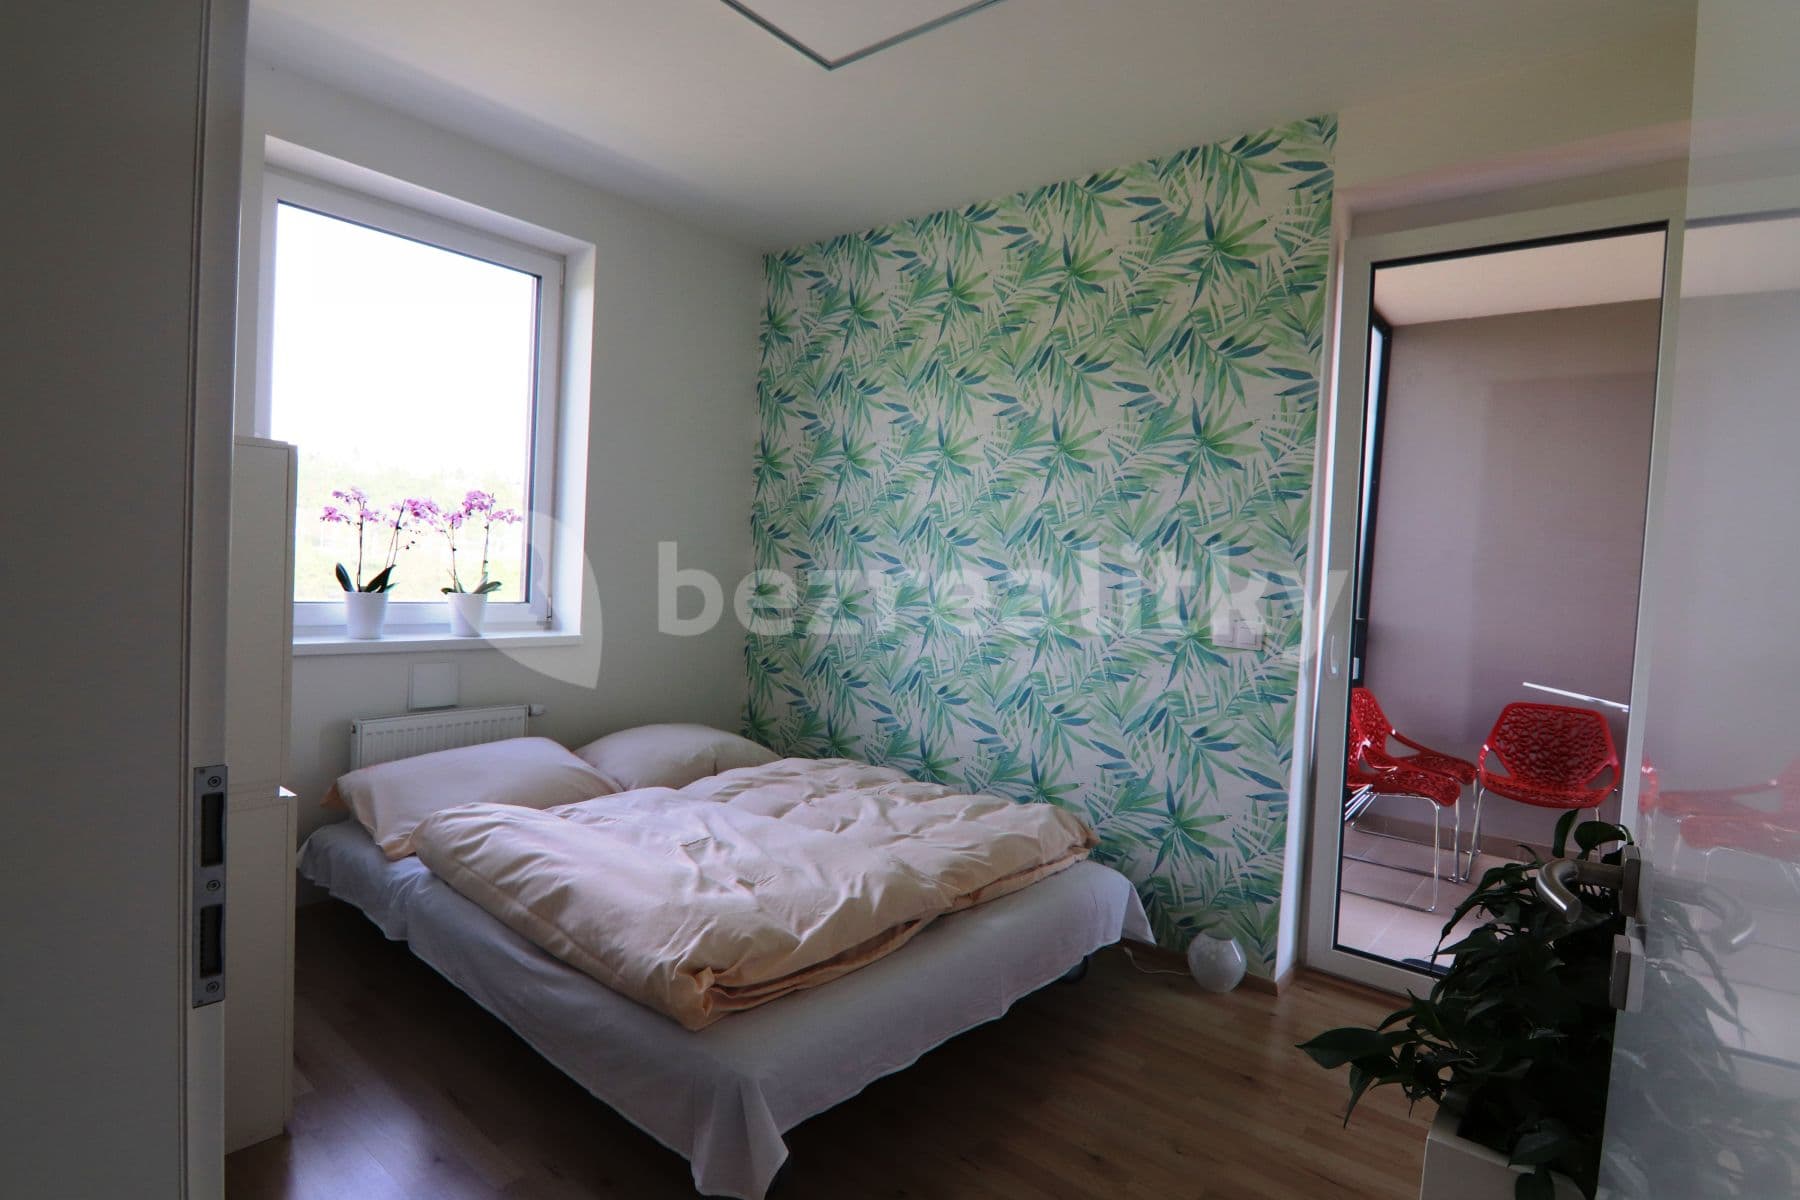 2 bedroom with open-plan kitchen flat to rent, 89 m², Šífařská, Prague, Prague